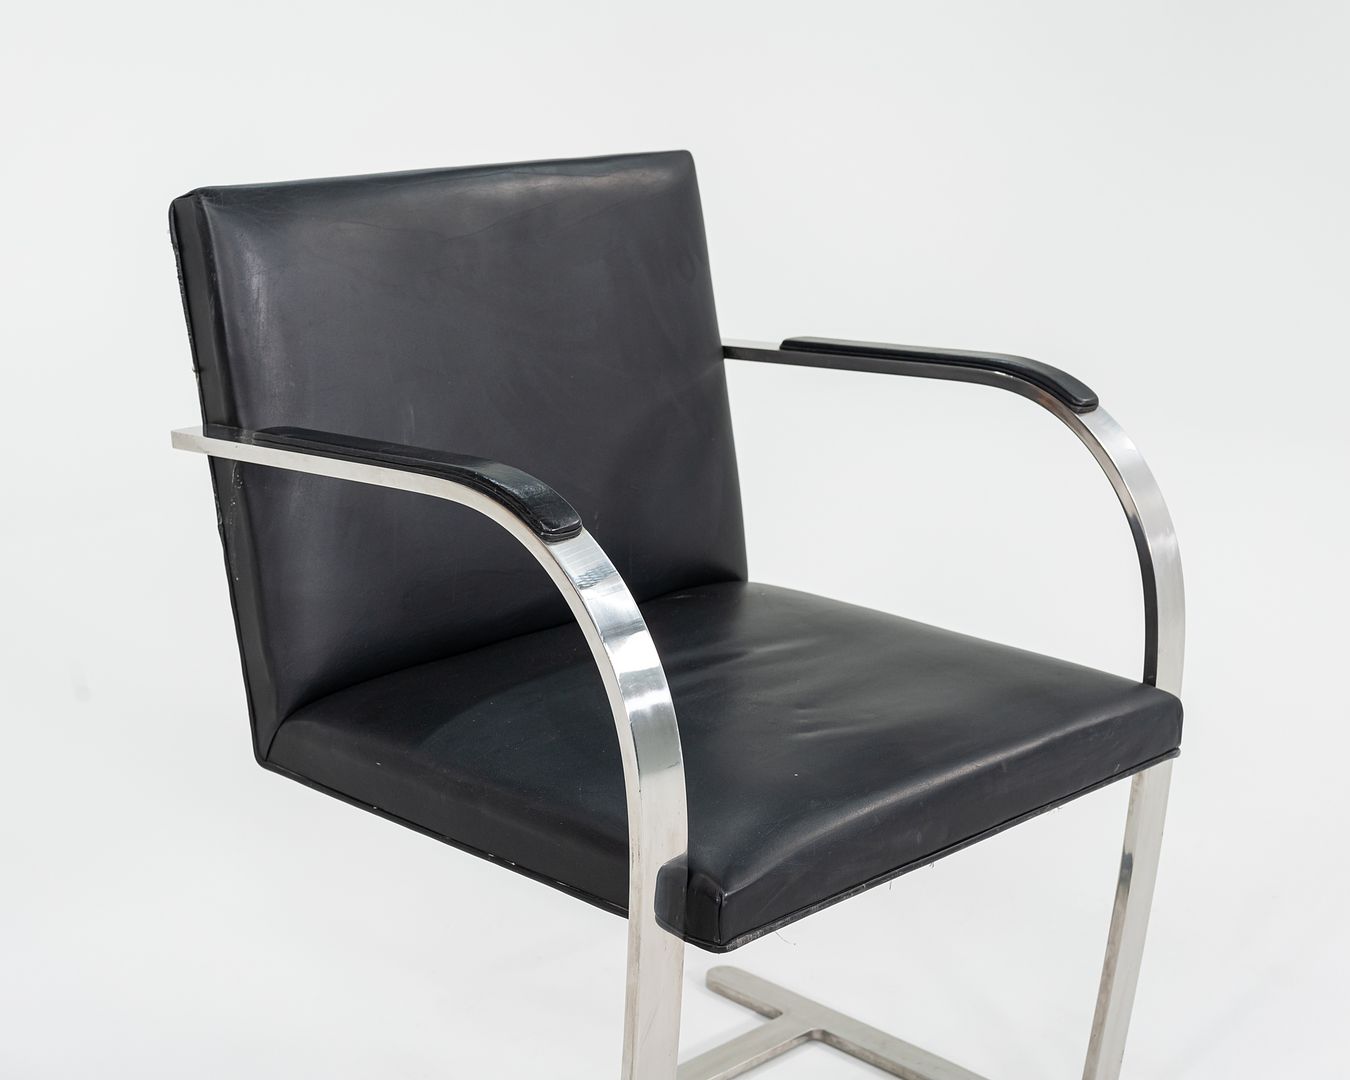 Brno Chair, Model MR50